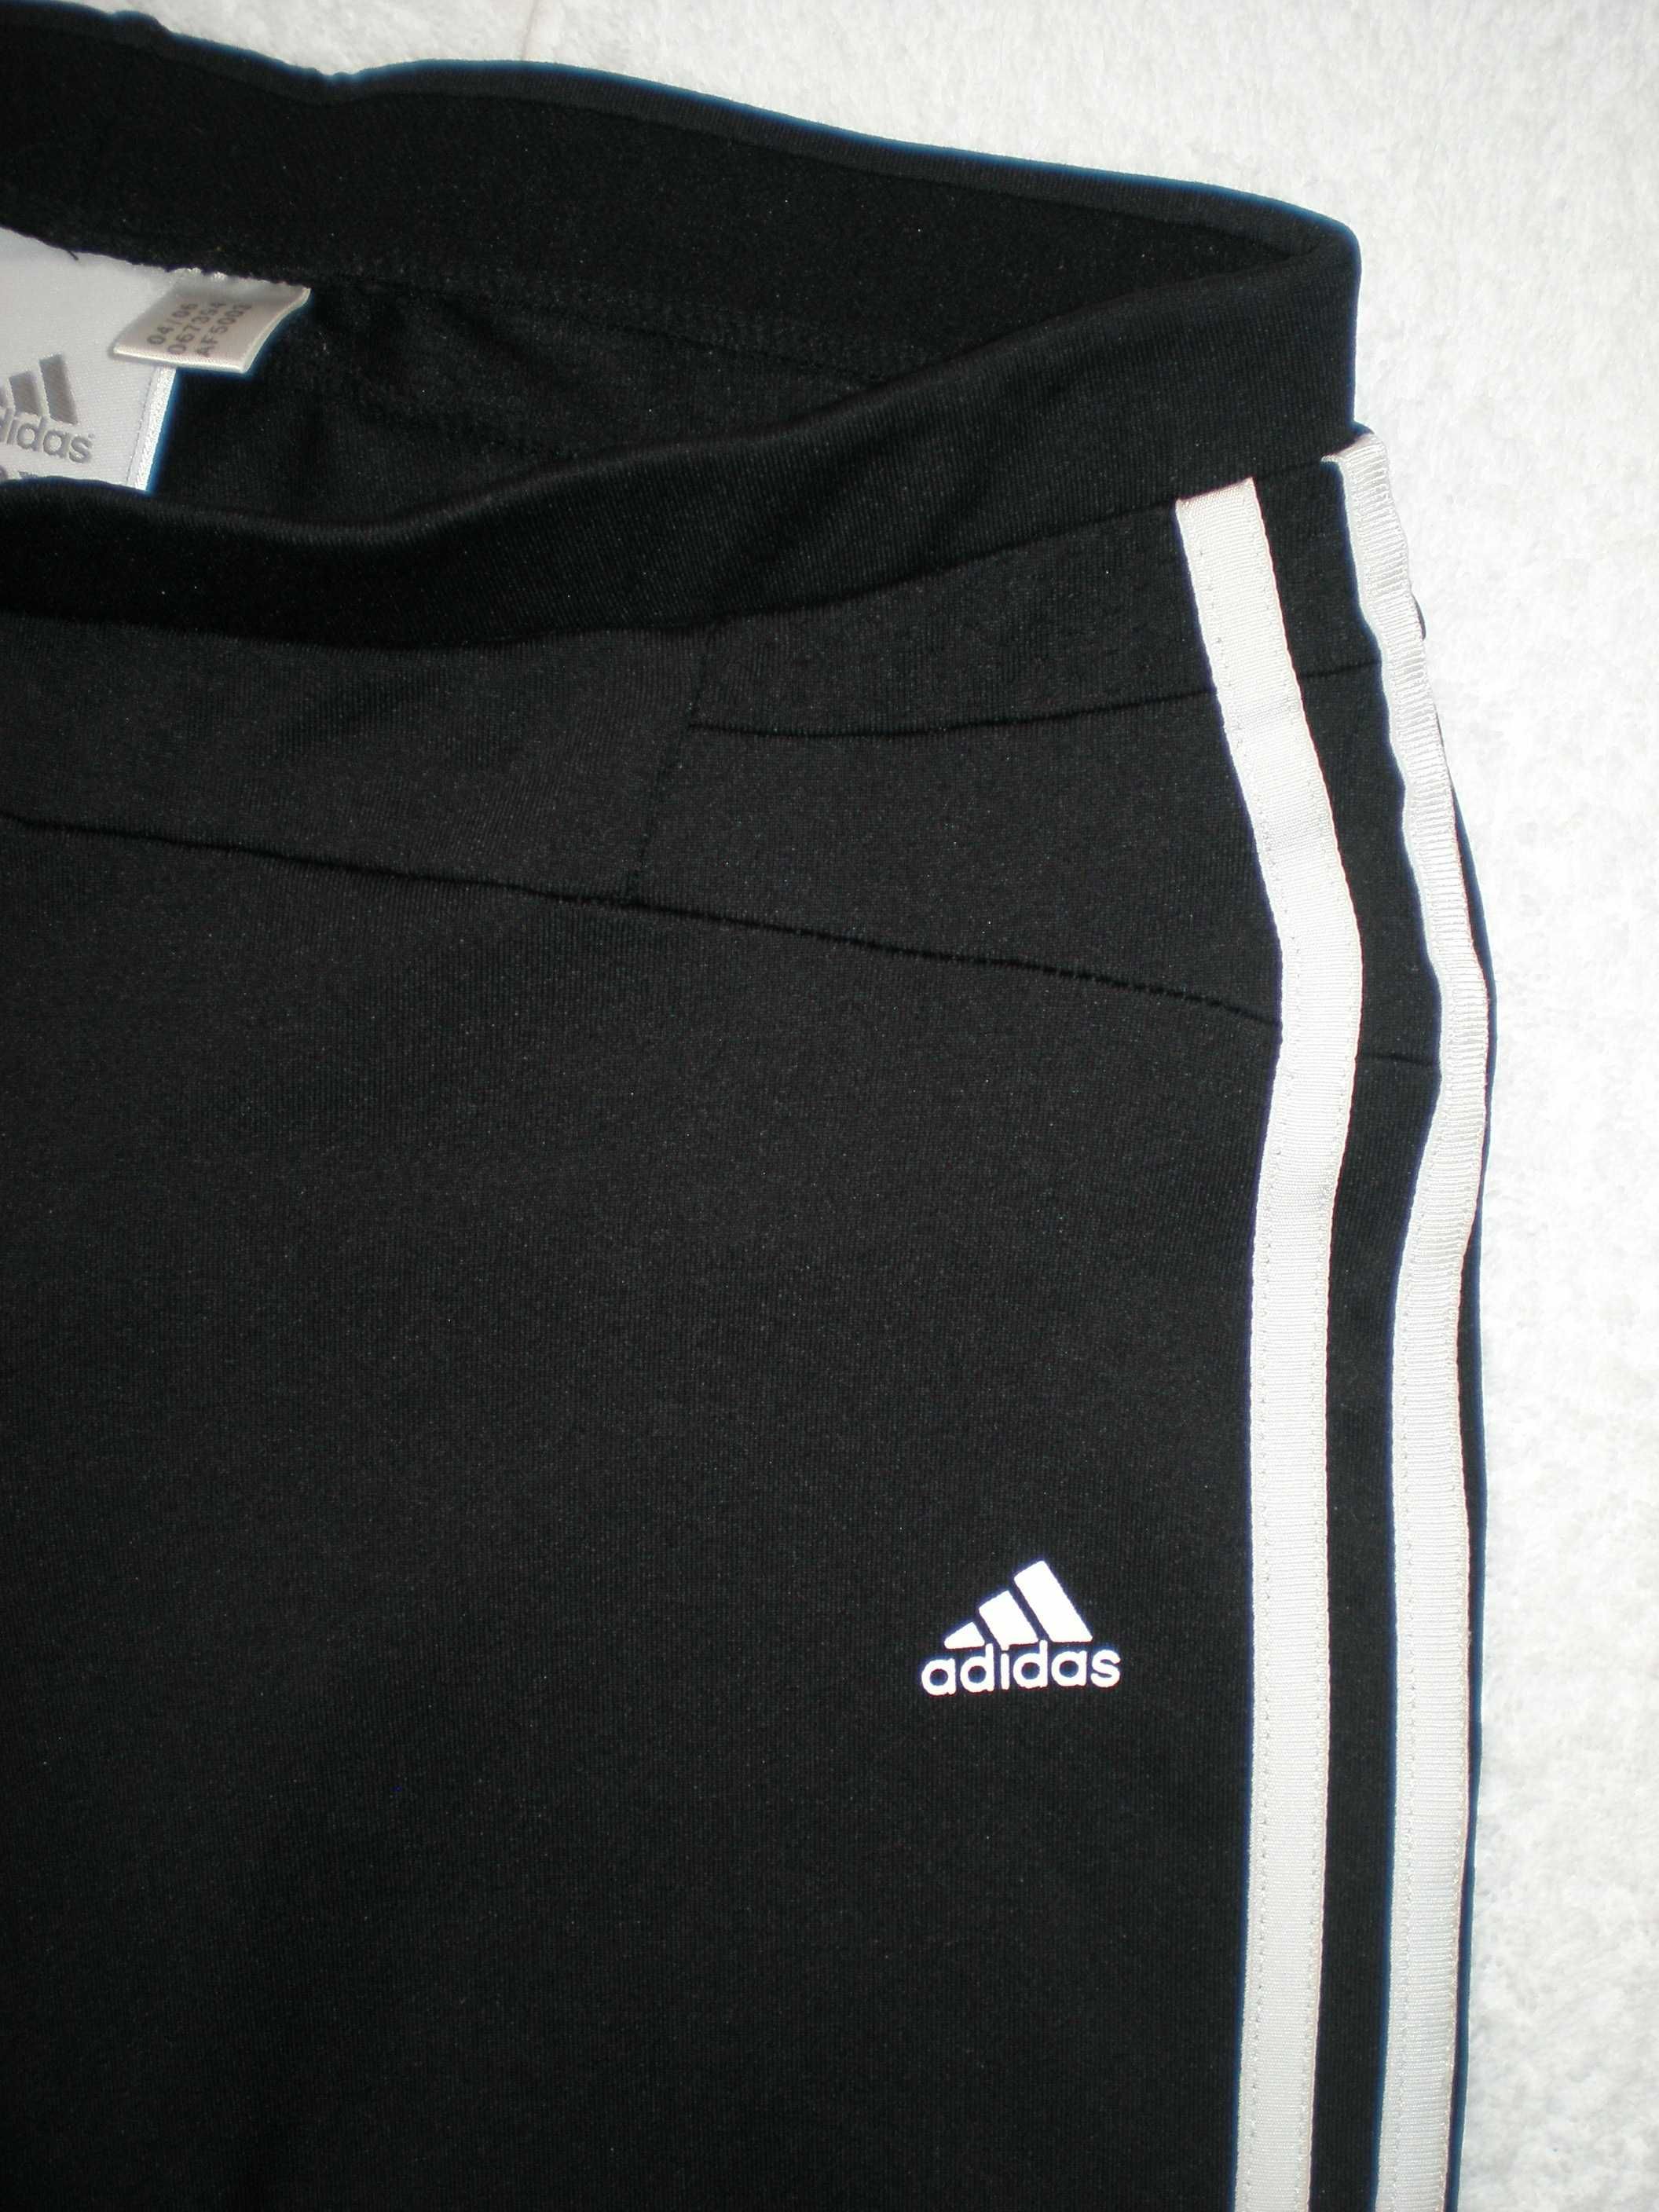 Adidas climacool лосины/леггинсы р.40 черного цвета